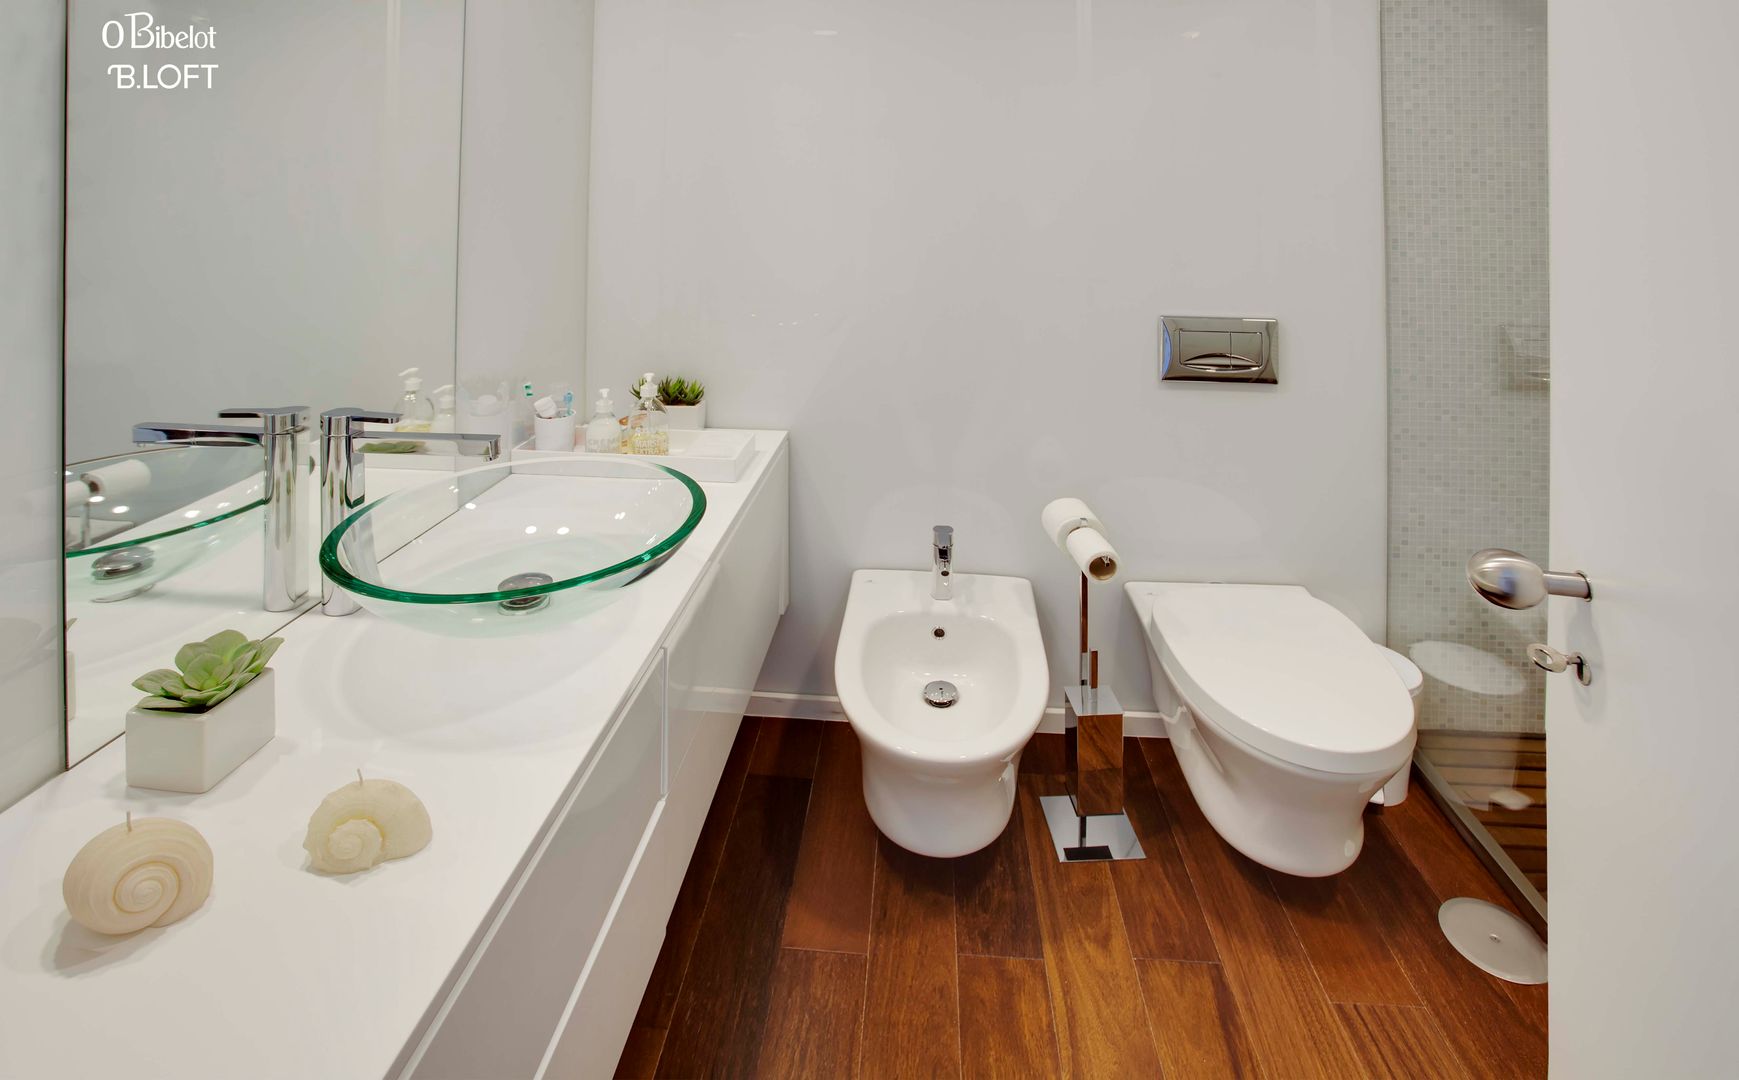 2015, Decoração de Apartamento BI, B.loft B.loft Minimalist style bathroom